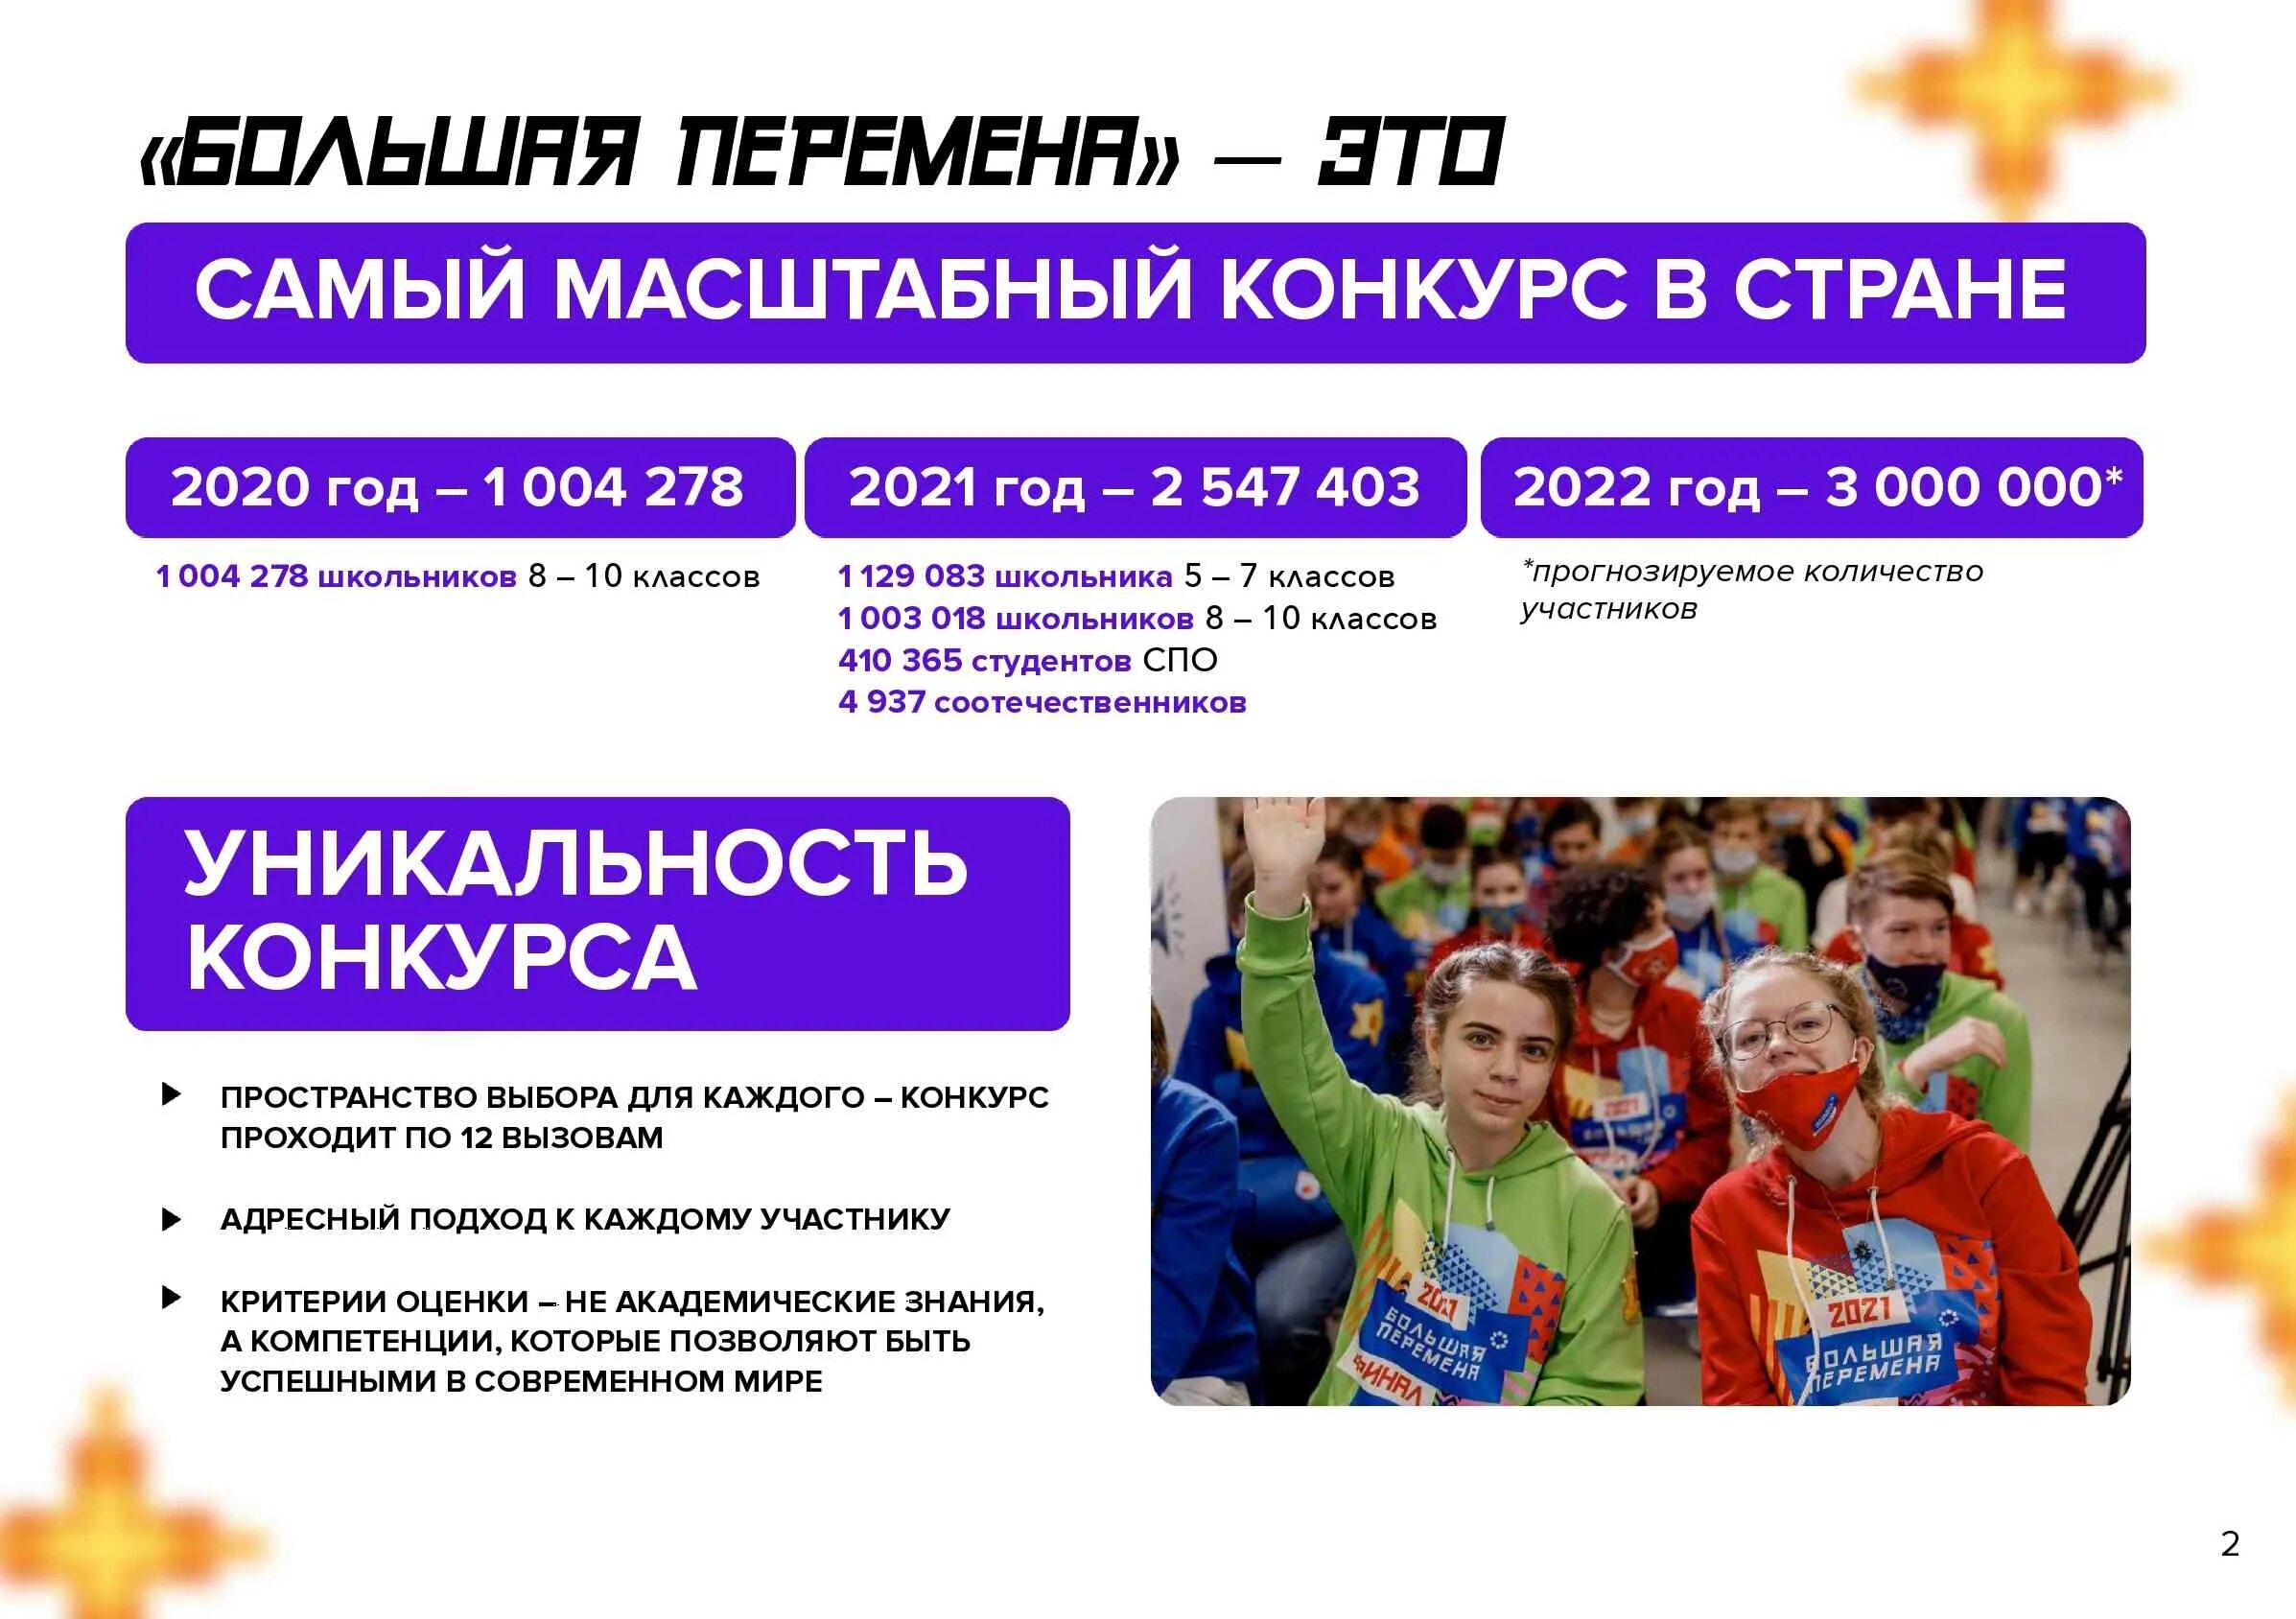 Большая перемена аккаунт. Всероссийский конкурс большая перемена 2022. Большая перемена конкурс для школьников 2022. Проект большая перемена 2022. Проект большая перемена для школьников что это такое.